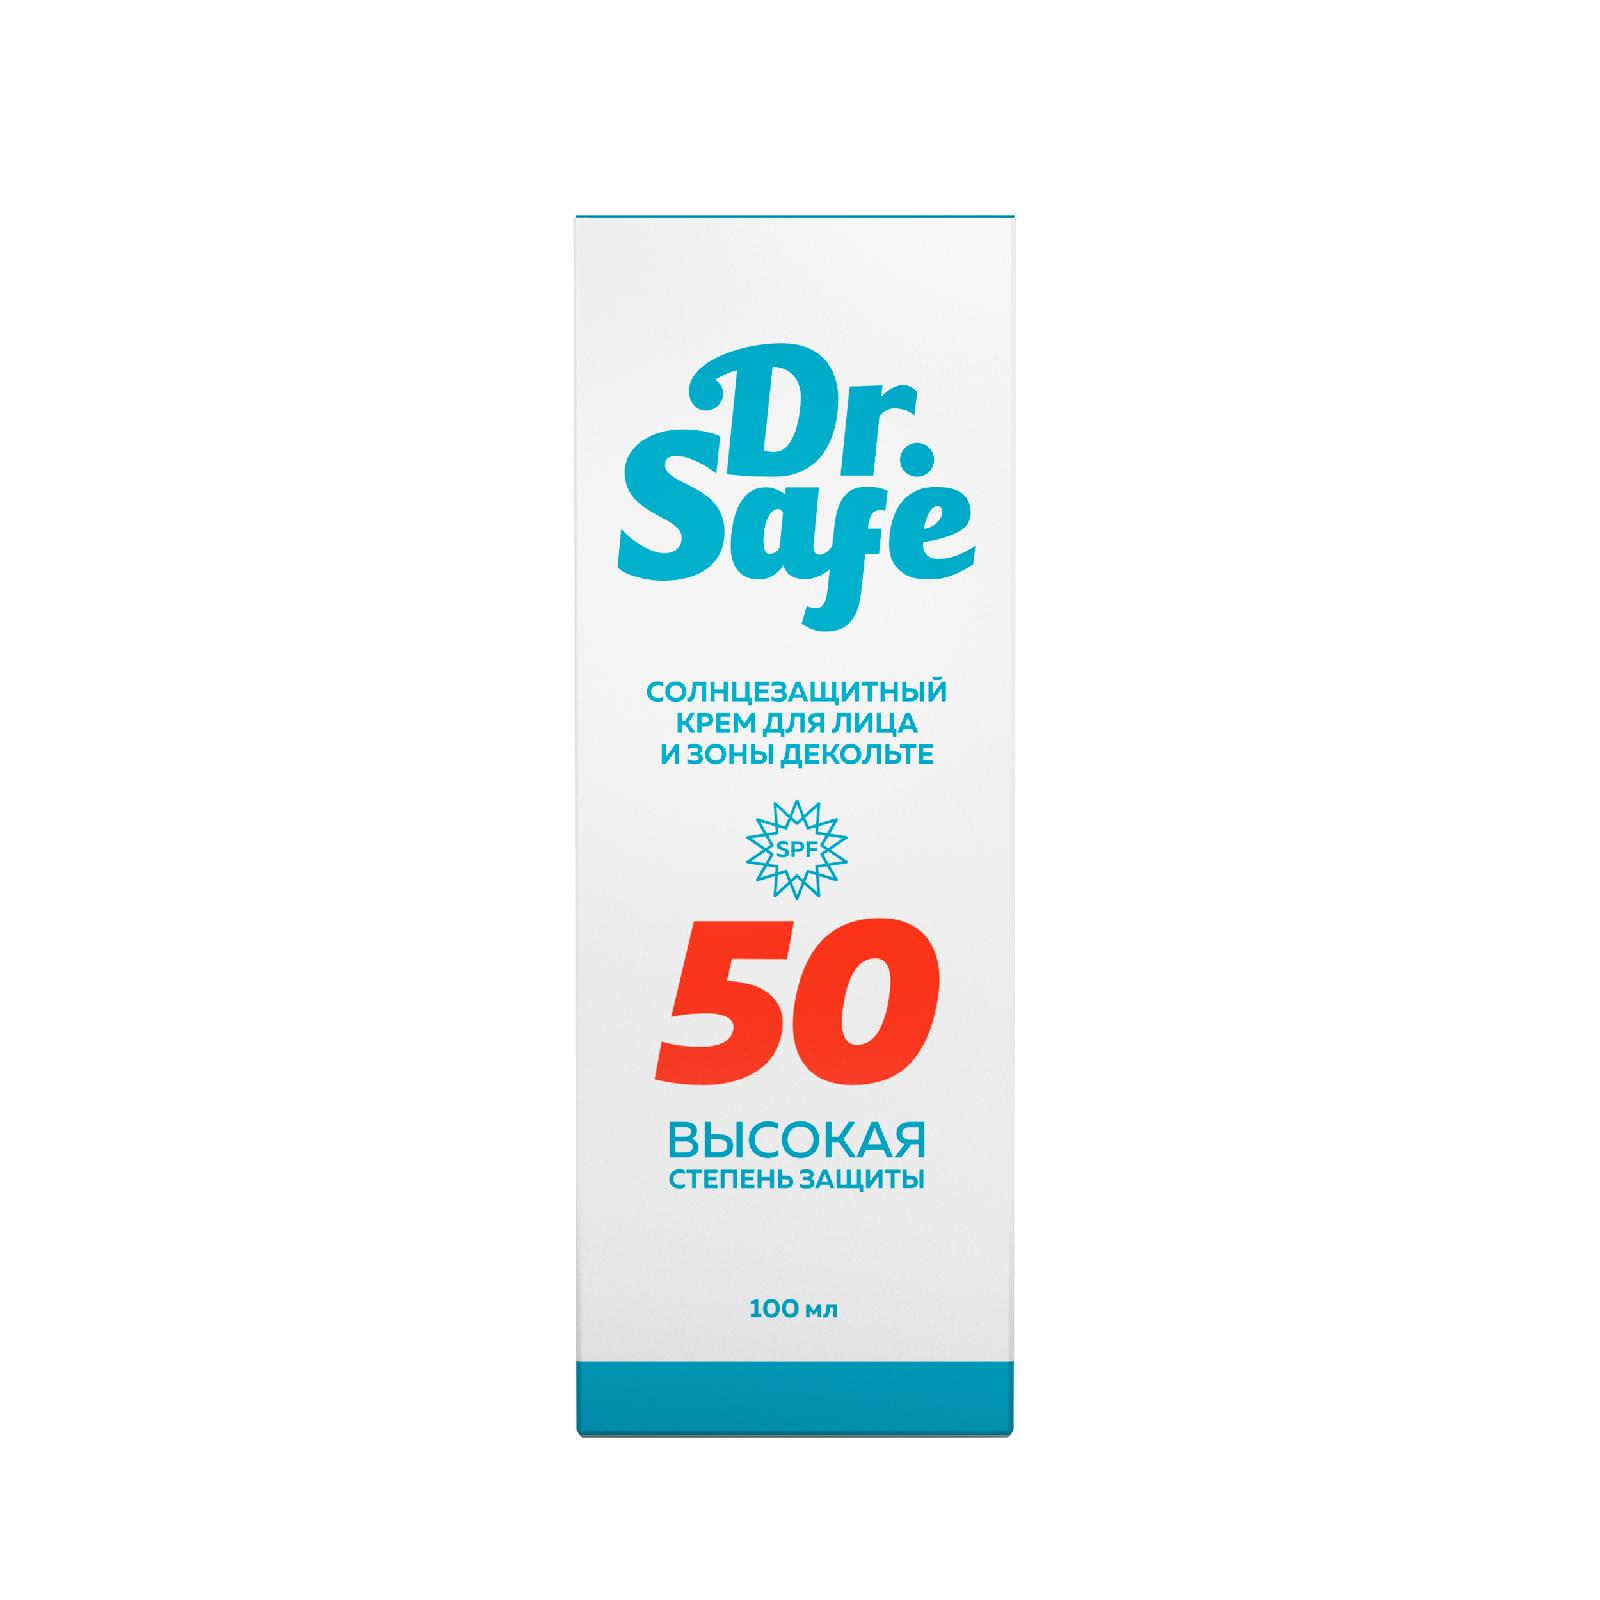 Солнцезащитный крем для лица DR.SAFE 50 SPF, 100 мл institut esthederm солнцезащитный крем no sun с ультравысокой степенью защиты 50 0